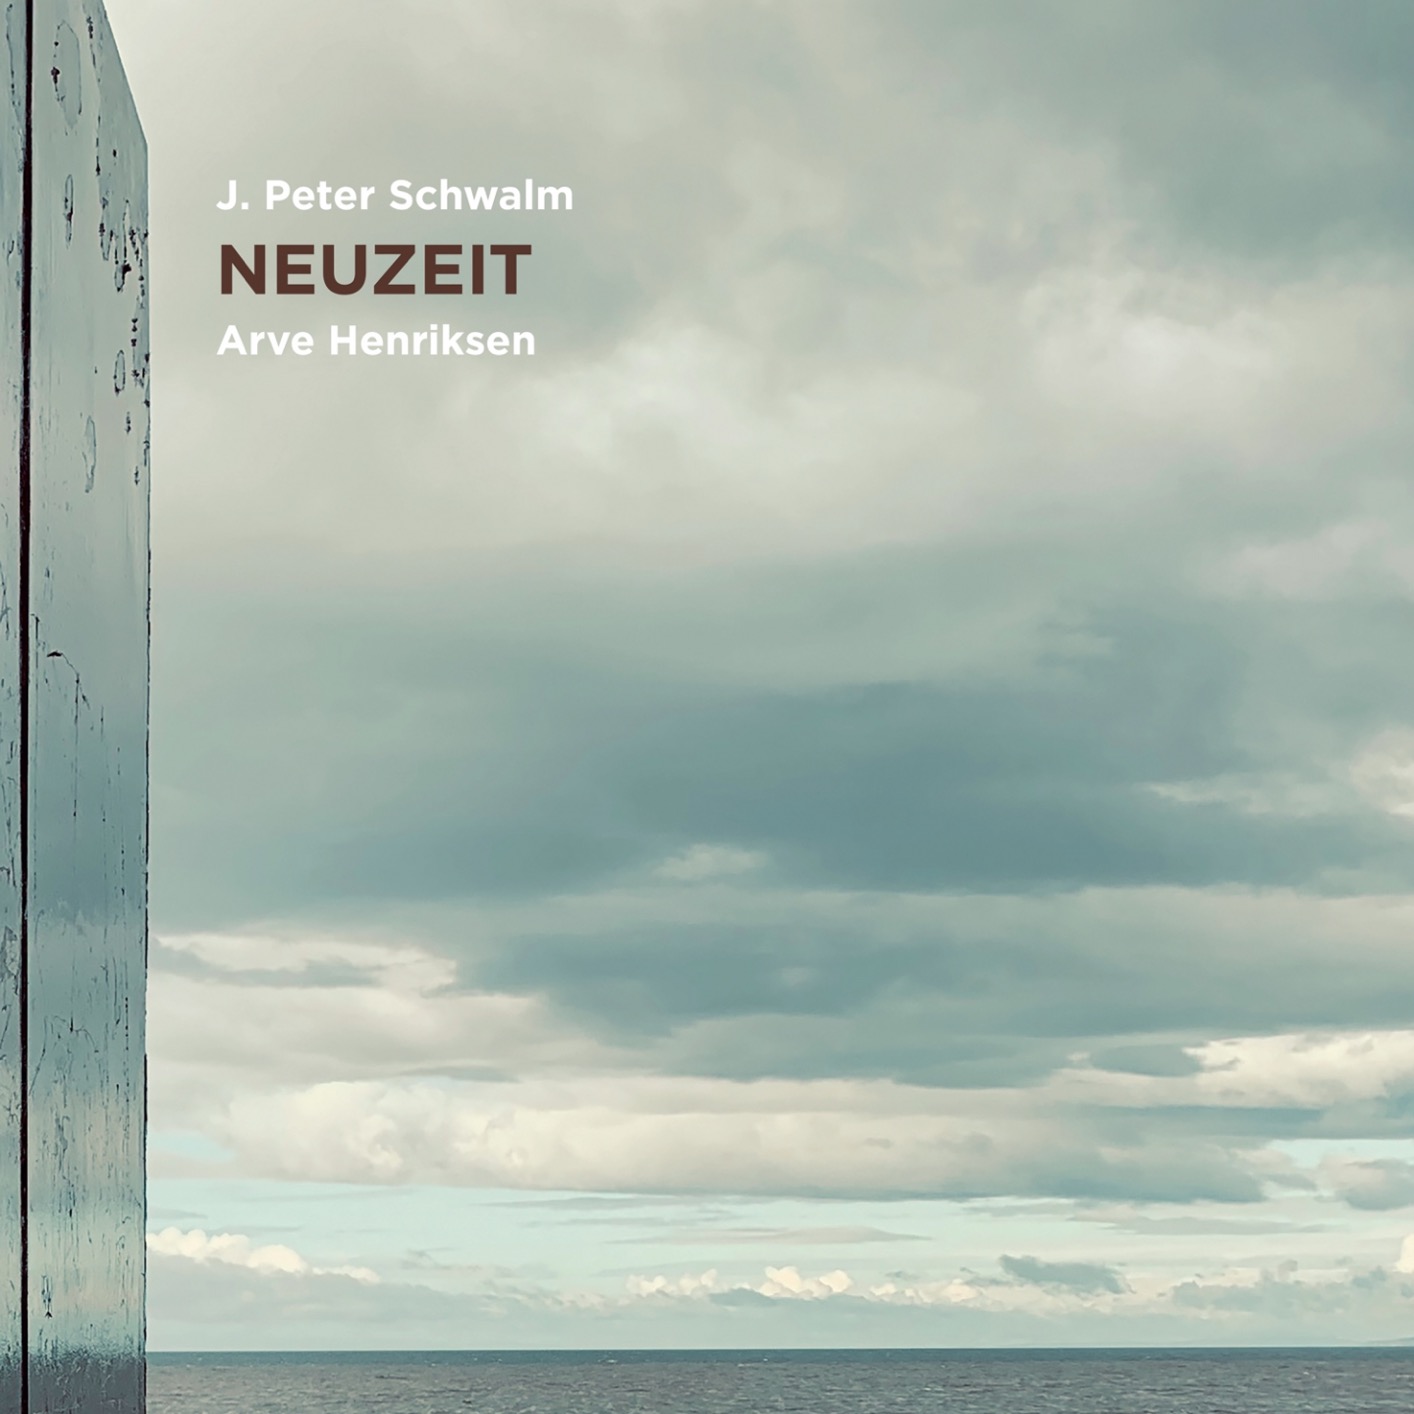 J.Peter Schwalm & Arve Henriksen - Neuzeit (2020) [FLAC 24bit/96kHz]